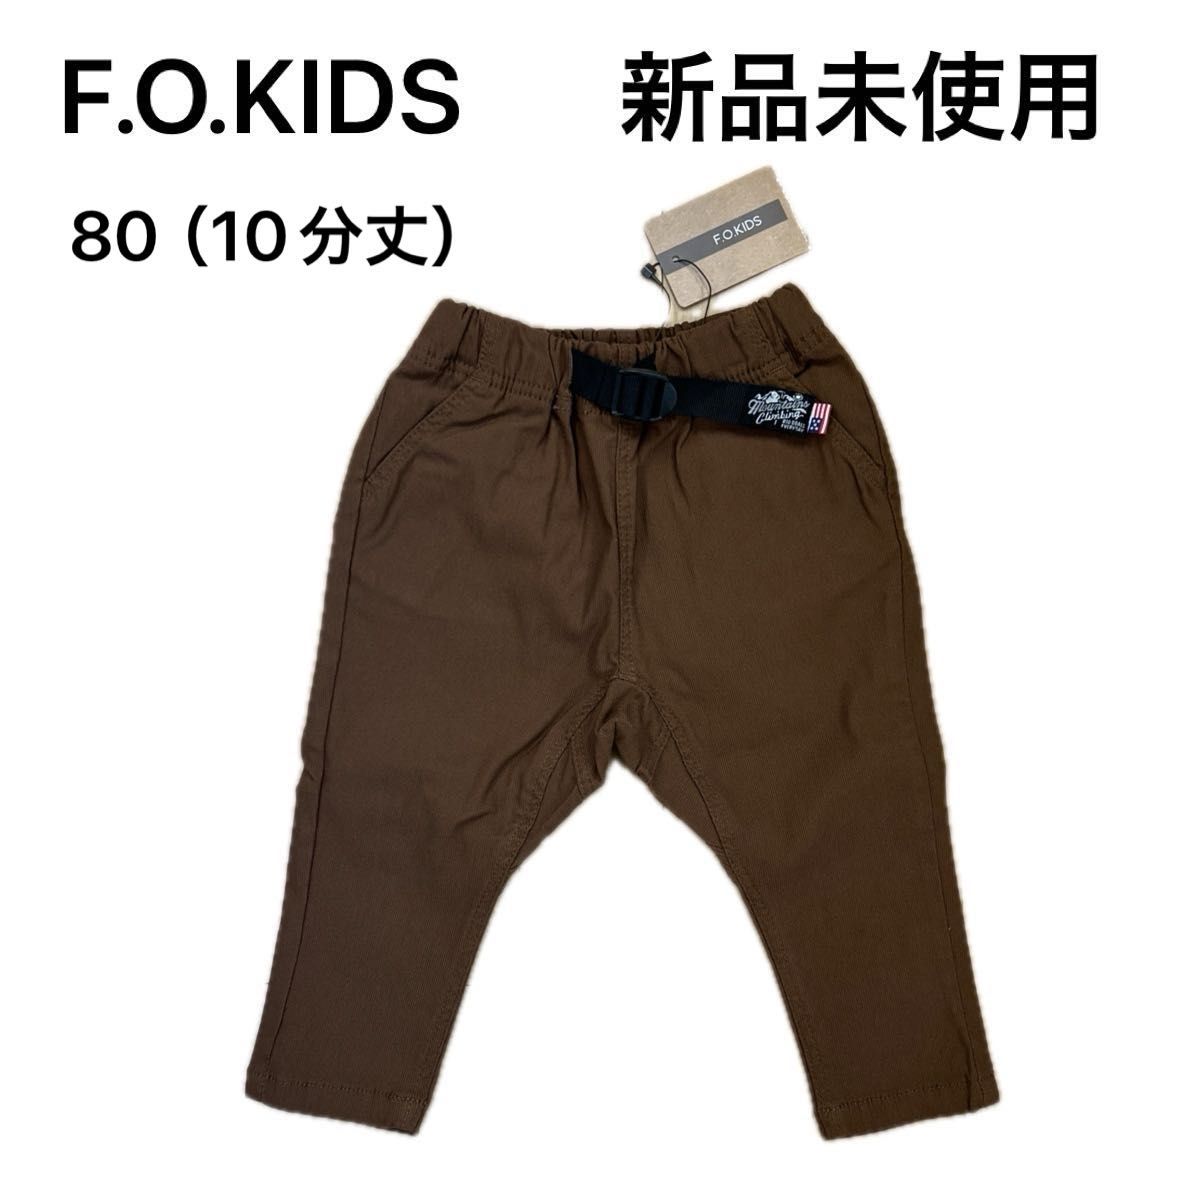 新品未使用【F.O.KIDS】ストレッチ テーパードパンツ 10分丈 80cm